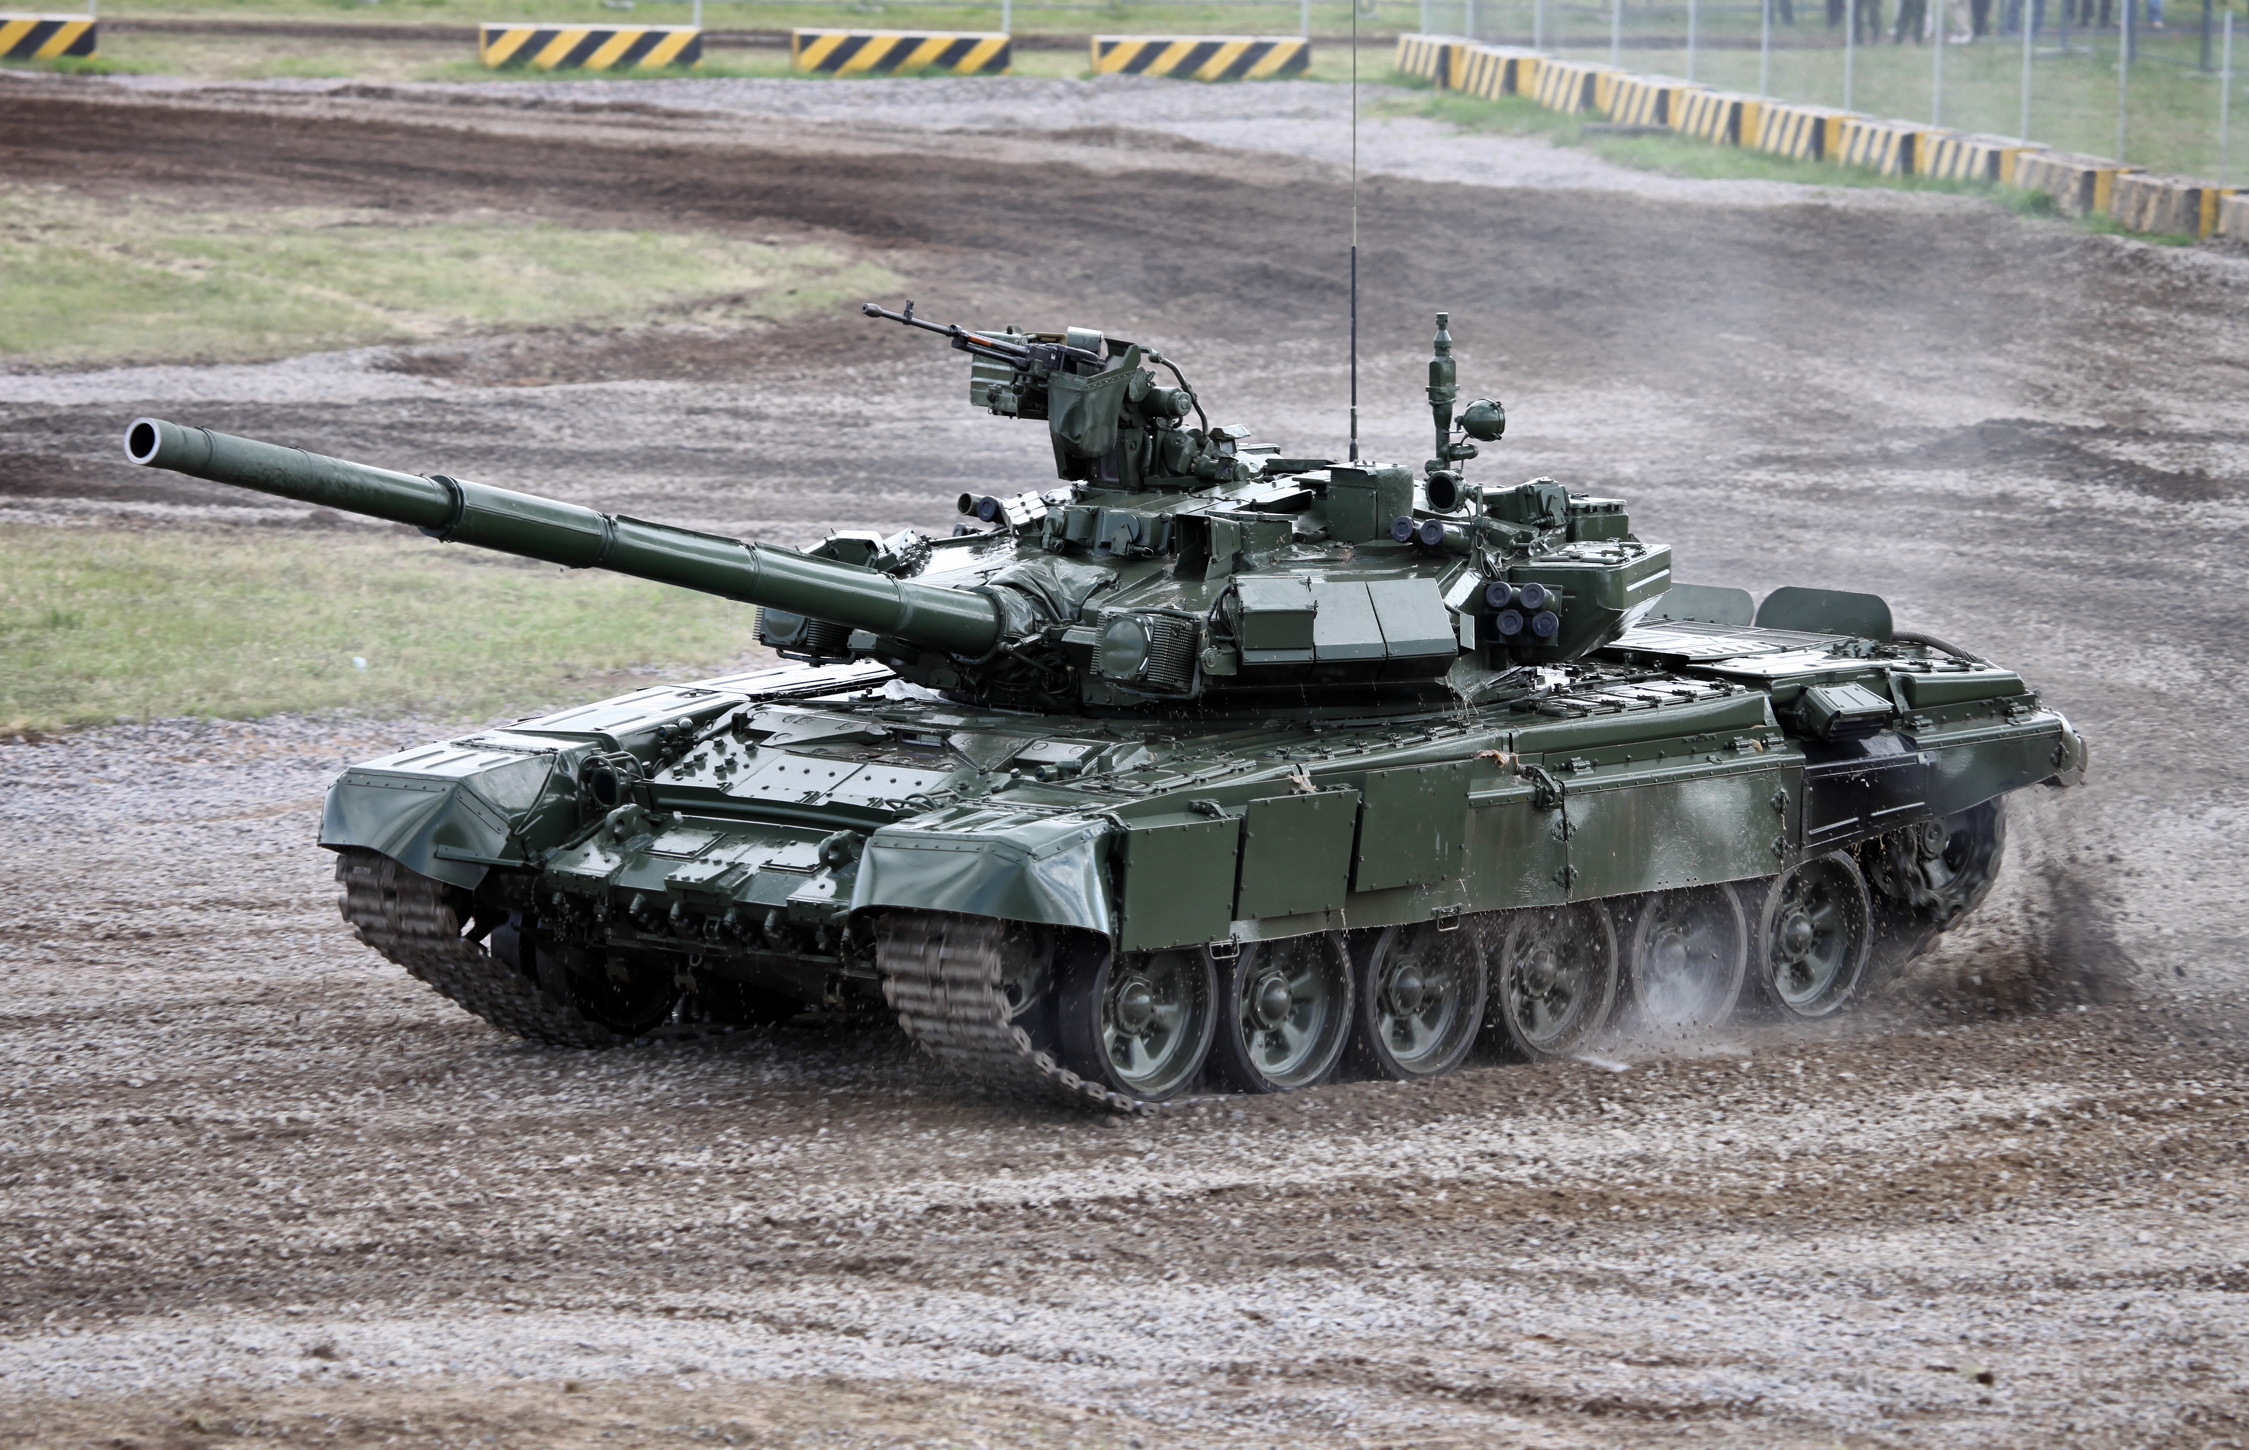 T-90: Với sự trang bị hoàn hảo và vẻ đẹp toàn diện, xe tăng T-90 là một trong những tài sản quân sự ấn tượng nhất trên thế giới. Loại xe tăng này được trang bị các tính năng hiện đại nhất, từ vũ khí tới máy chủ đều được trang bị tối ưu. Hãy xem hình ảnh và khám phá tuyệt vời của chiếc xe tăng này.